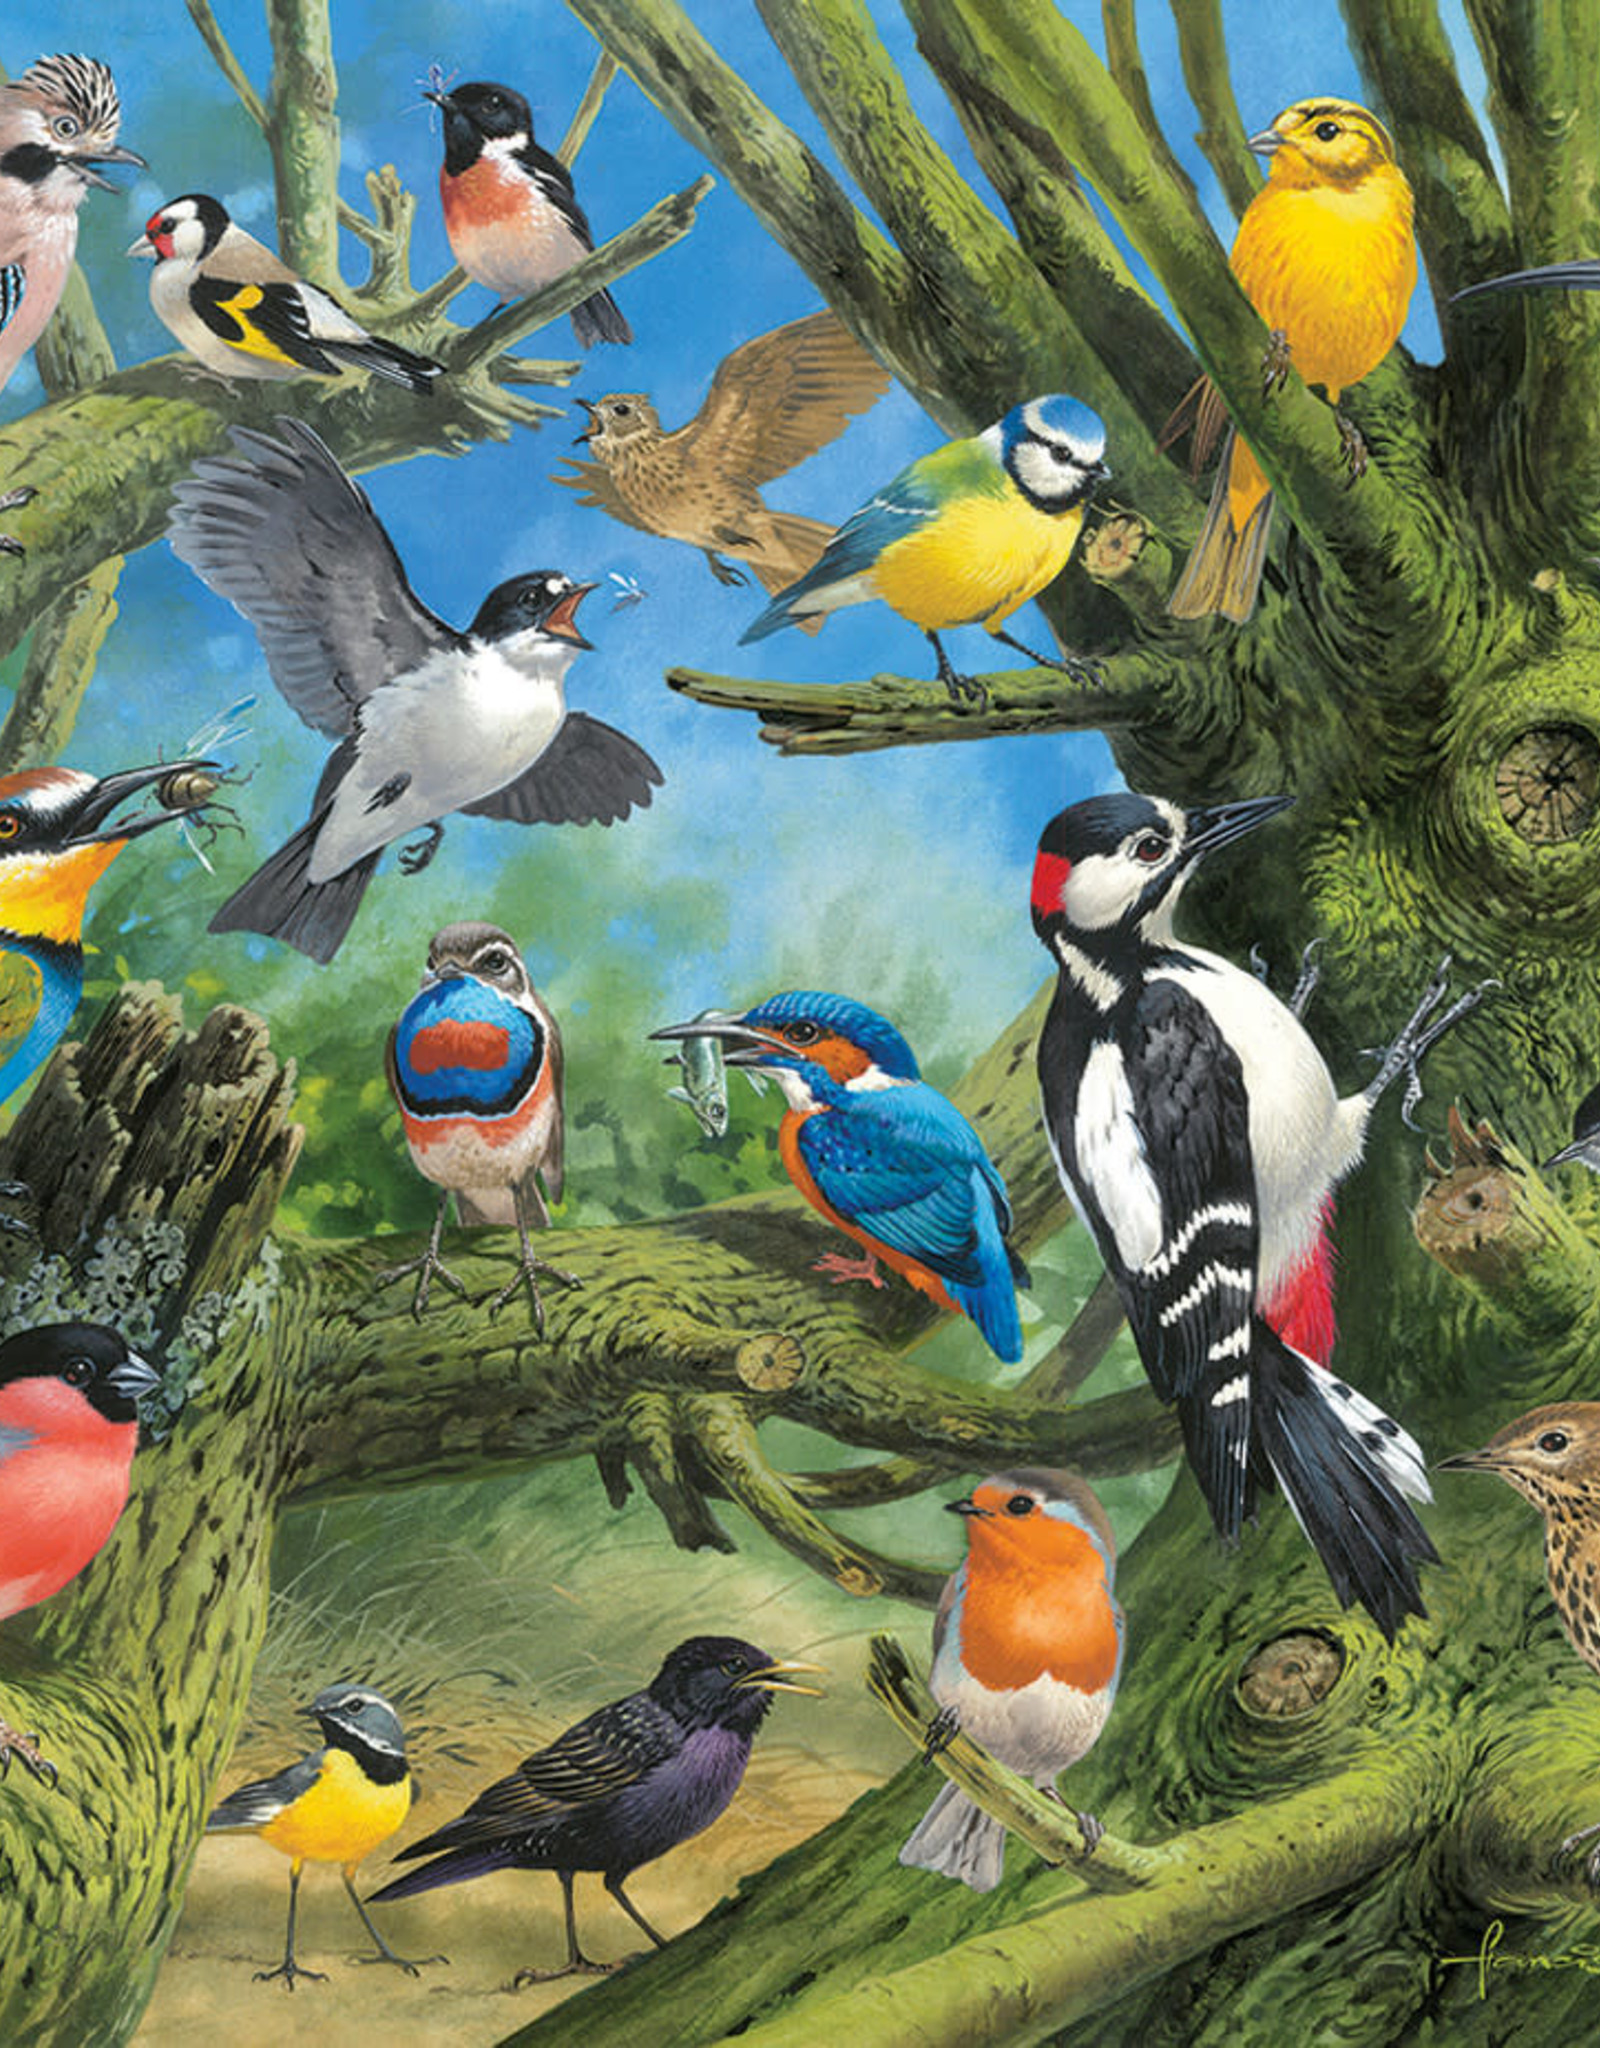 Eurographics Garden Birds by John Francis 1000pc